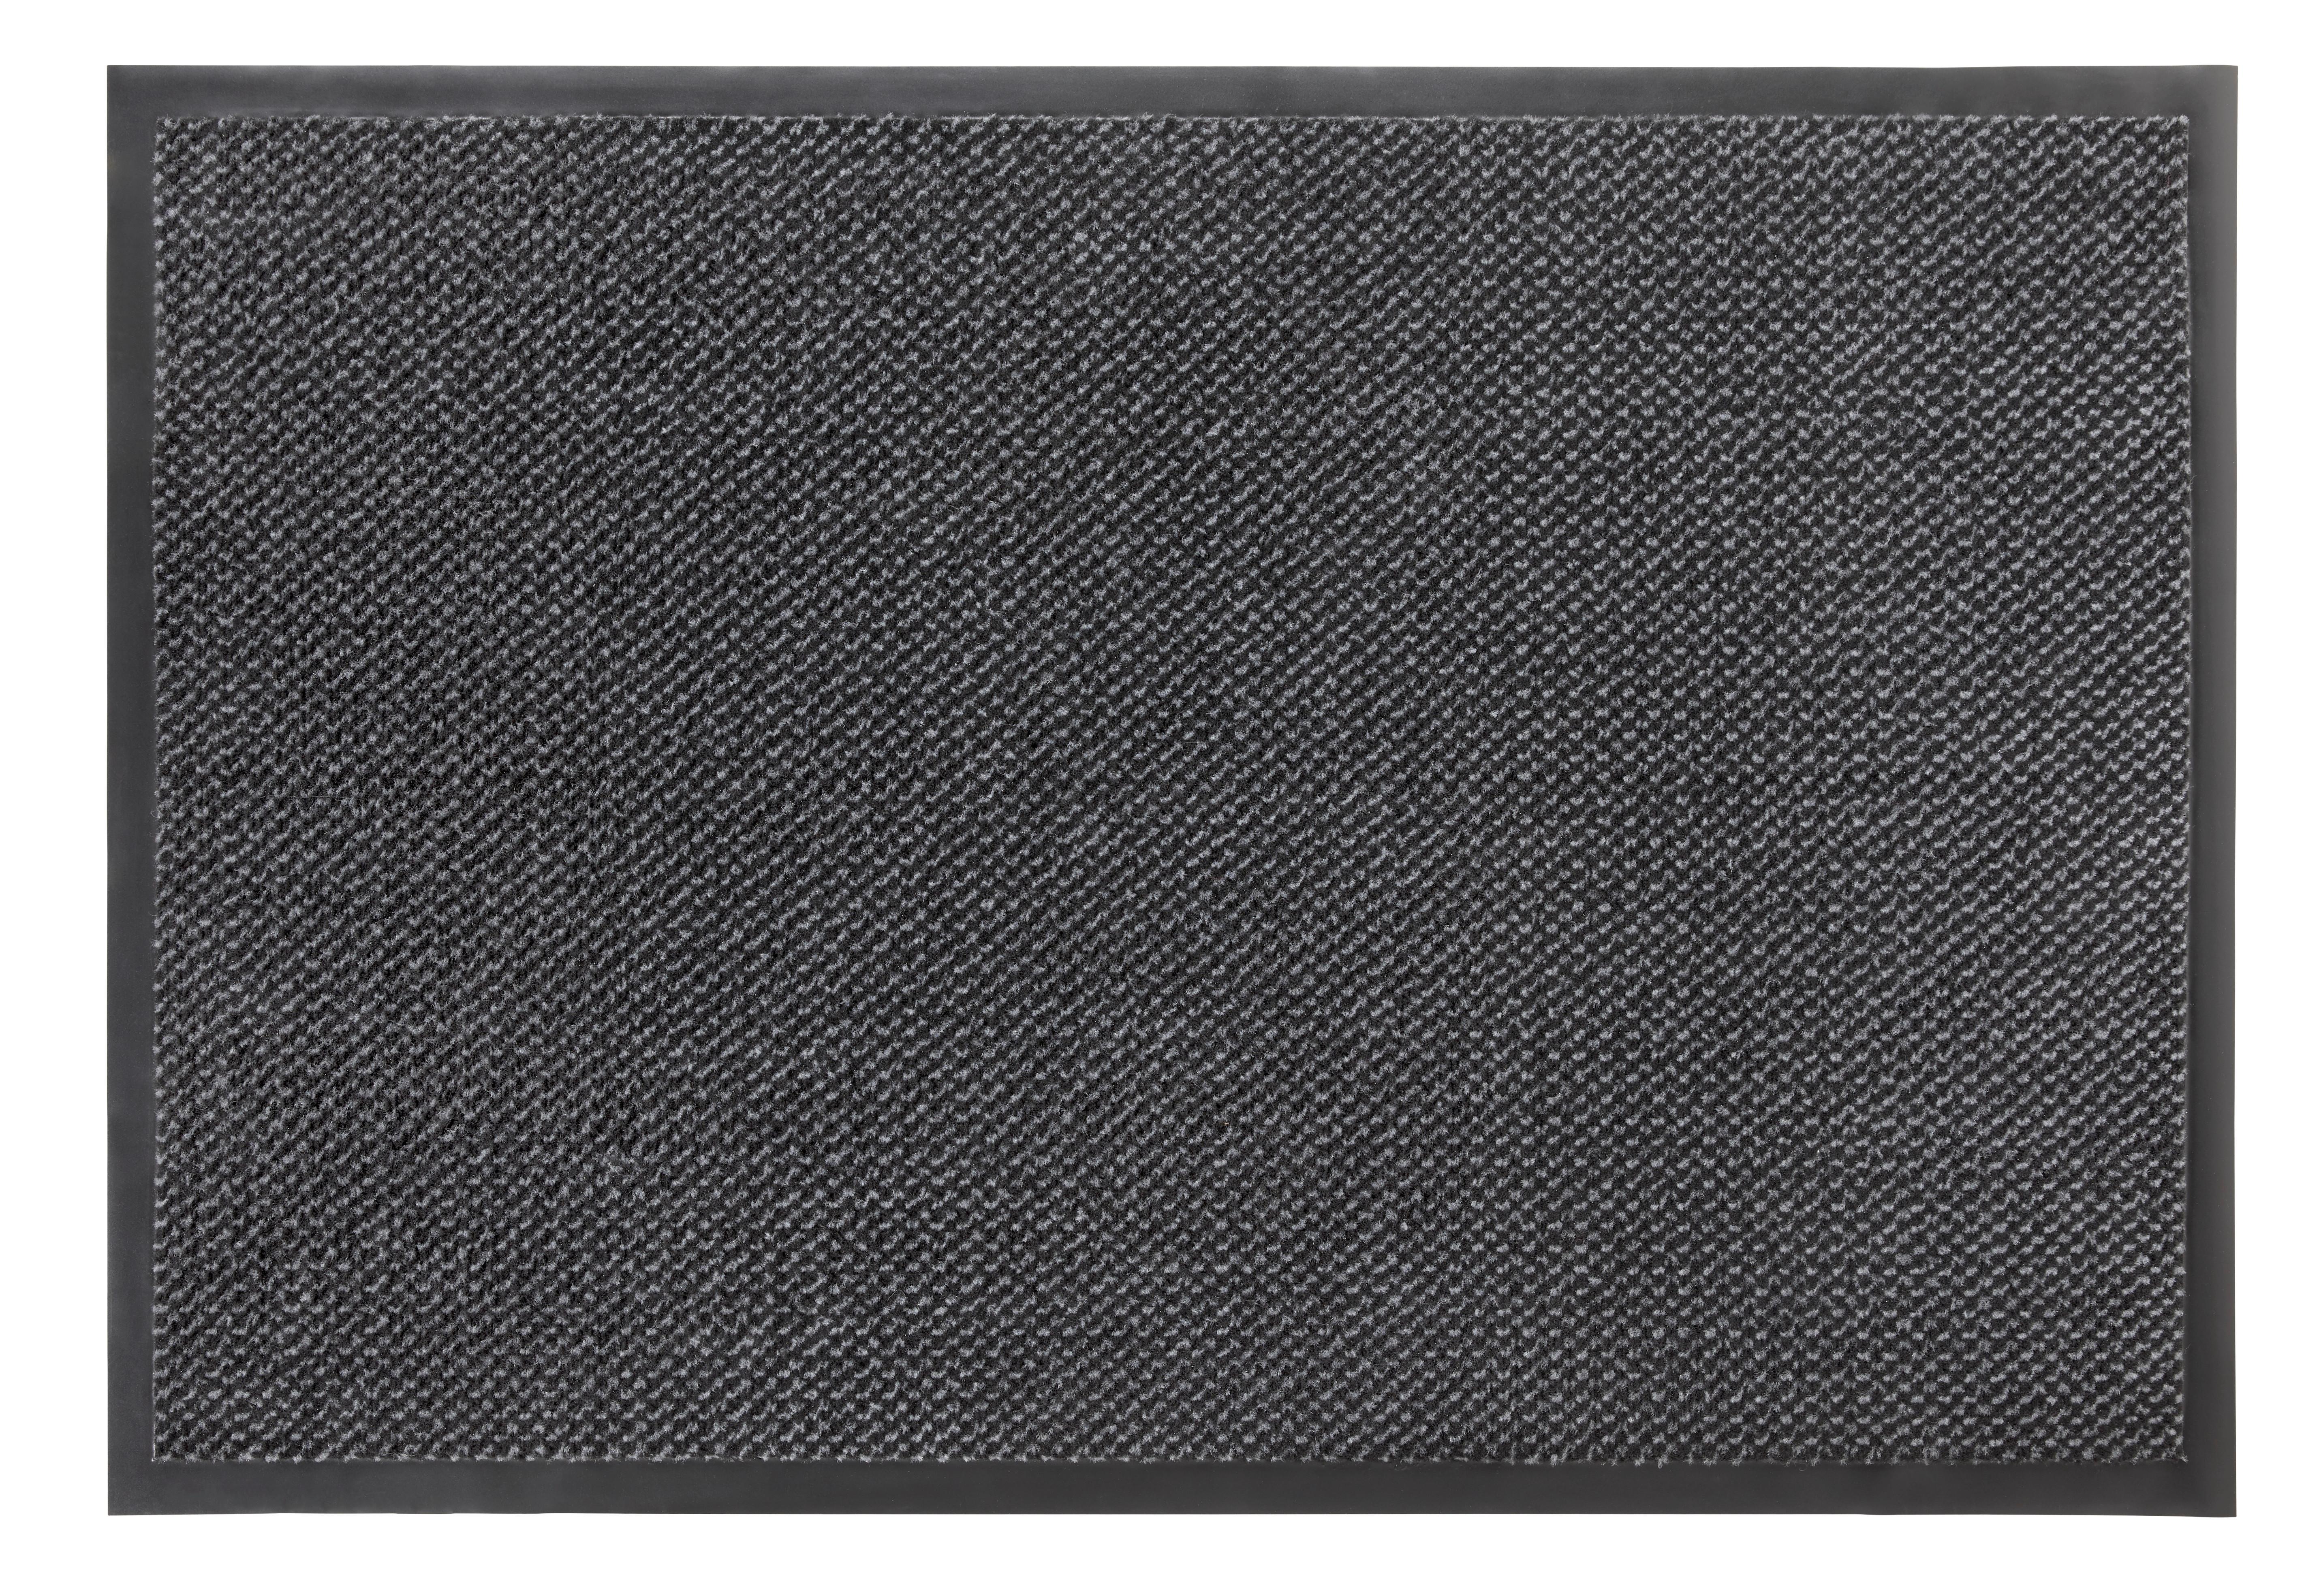 Lábtörlő Hamptons3 80/120 - Szürke/Fekete, konvencionális, Textil (80/120cm) - Modern Living